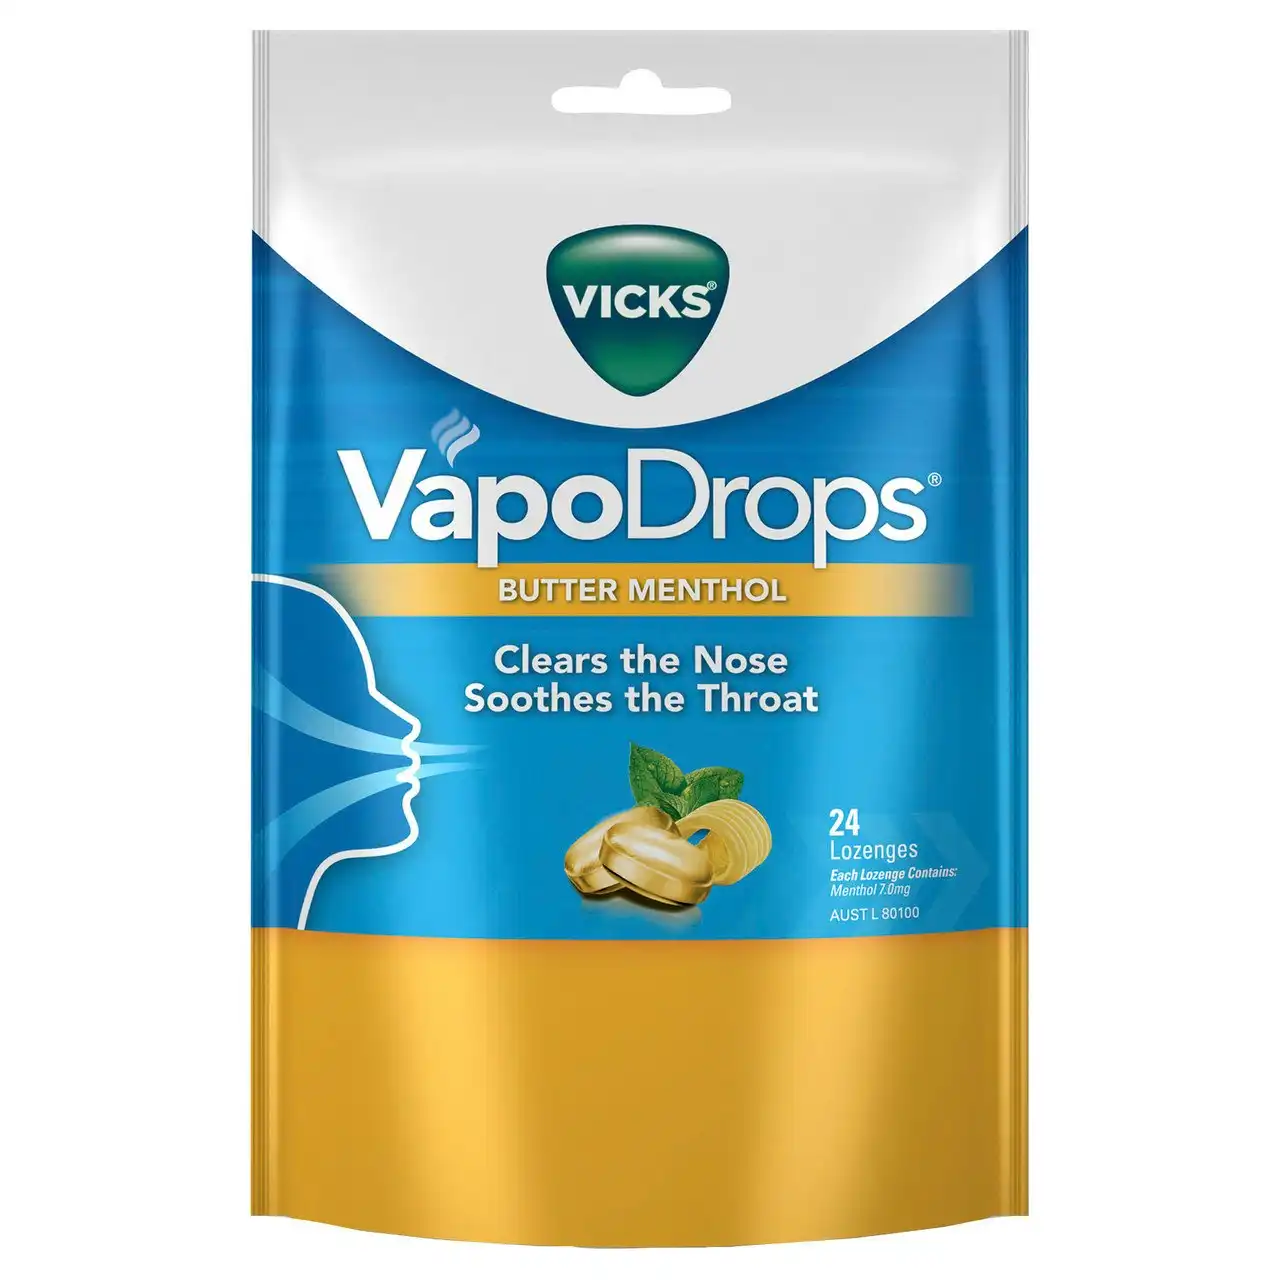 Vicks VapoDrops Butter Menthol 24 Lozenges - Cough & Cold